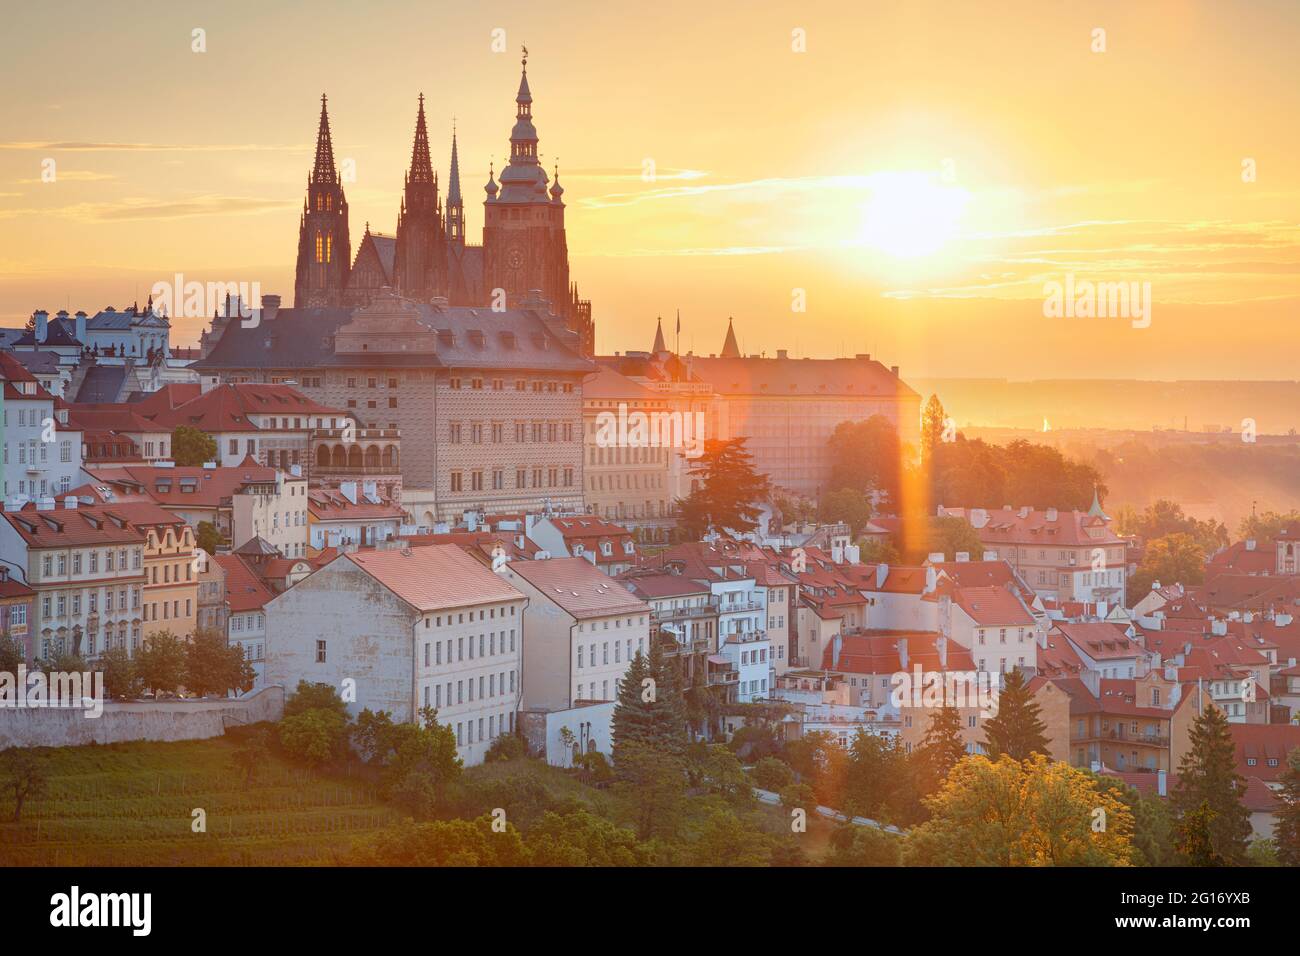 Castillo de Praga. Imagen aérea del paisaje urbano de Praga, capital de la República Checa con la Catedral de San Vito y el Distrito del Castillo durante el amanecer de verano. Foto de stock